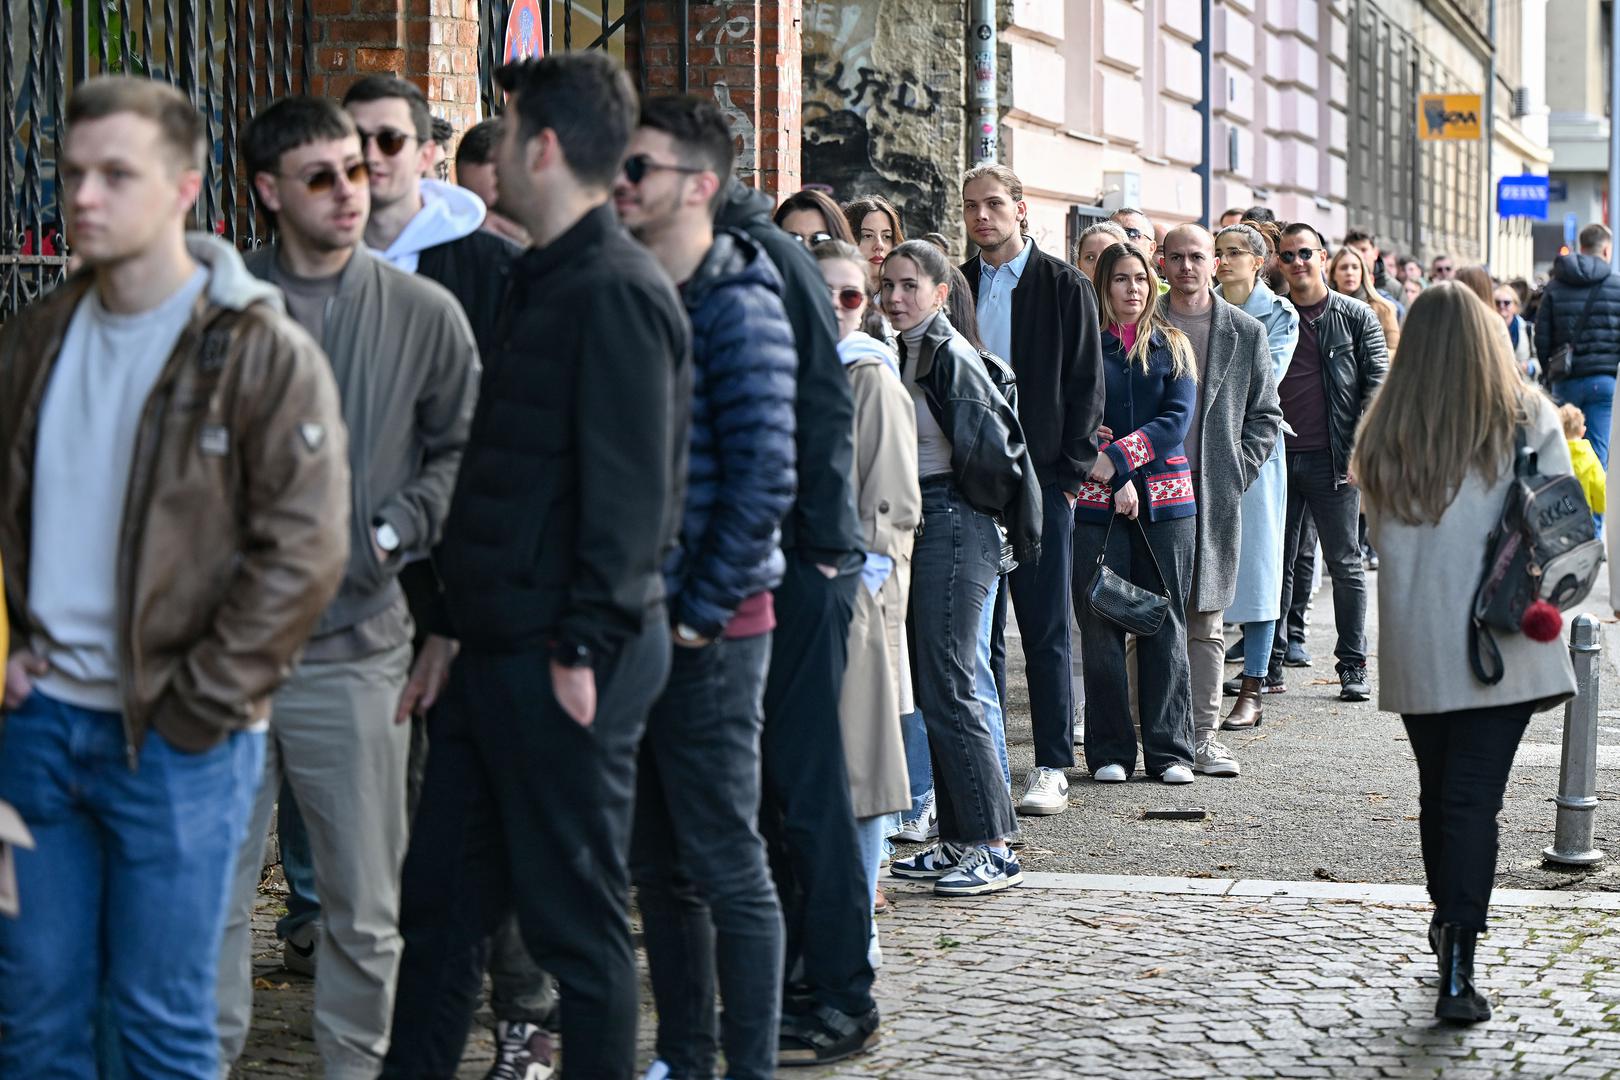 Veliki interes vlada među Zagrepčanima zbog čega je došlo do gužve na izbornom mjestu u Varšavskoj ulici. 